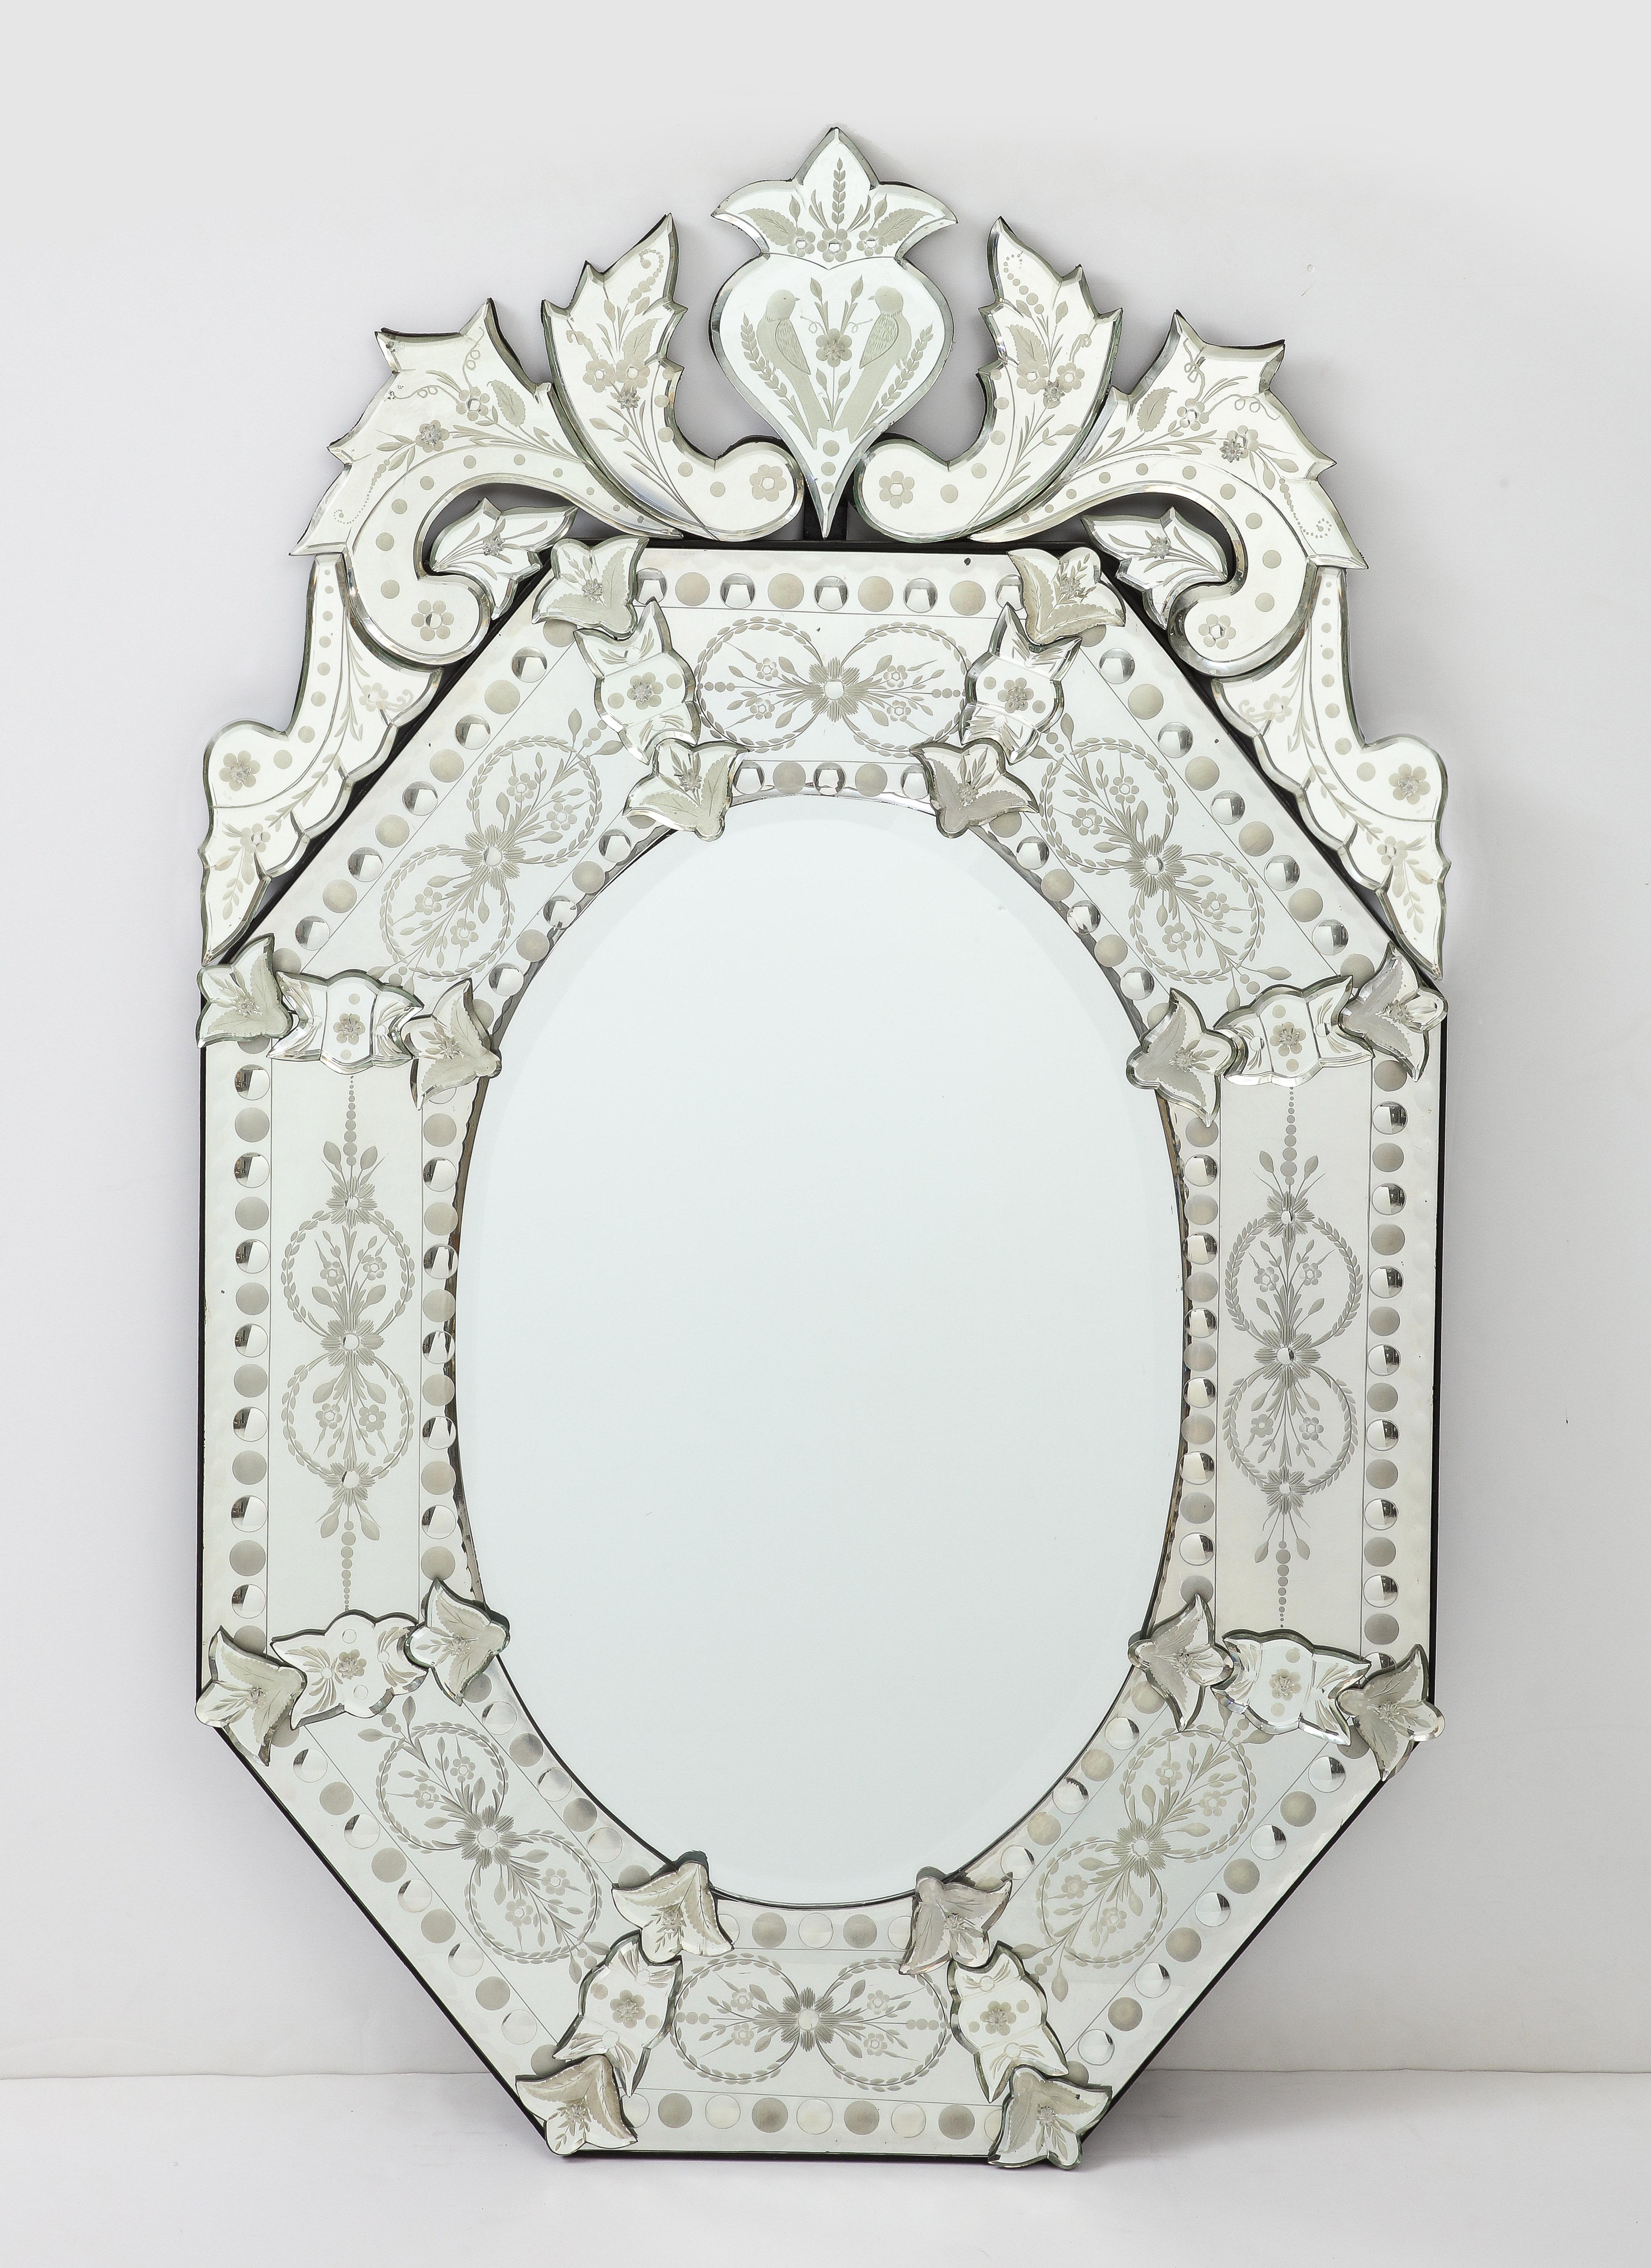 Paire de miroirs vénitiens italiens du milieu du siècle, avec des détails floraux gravés, montés sur des panneaux de bois noir.